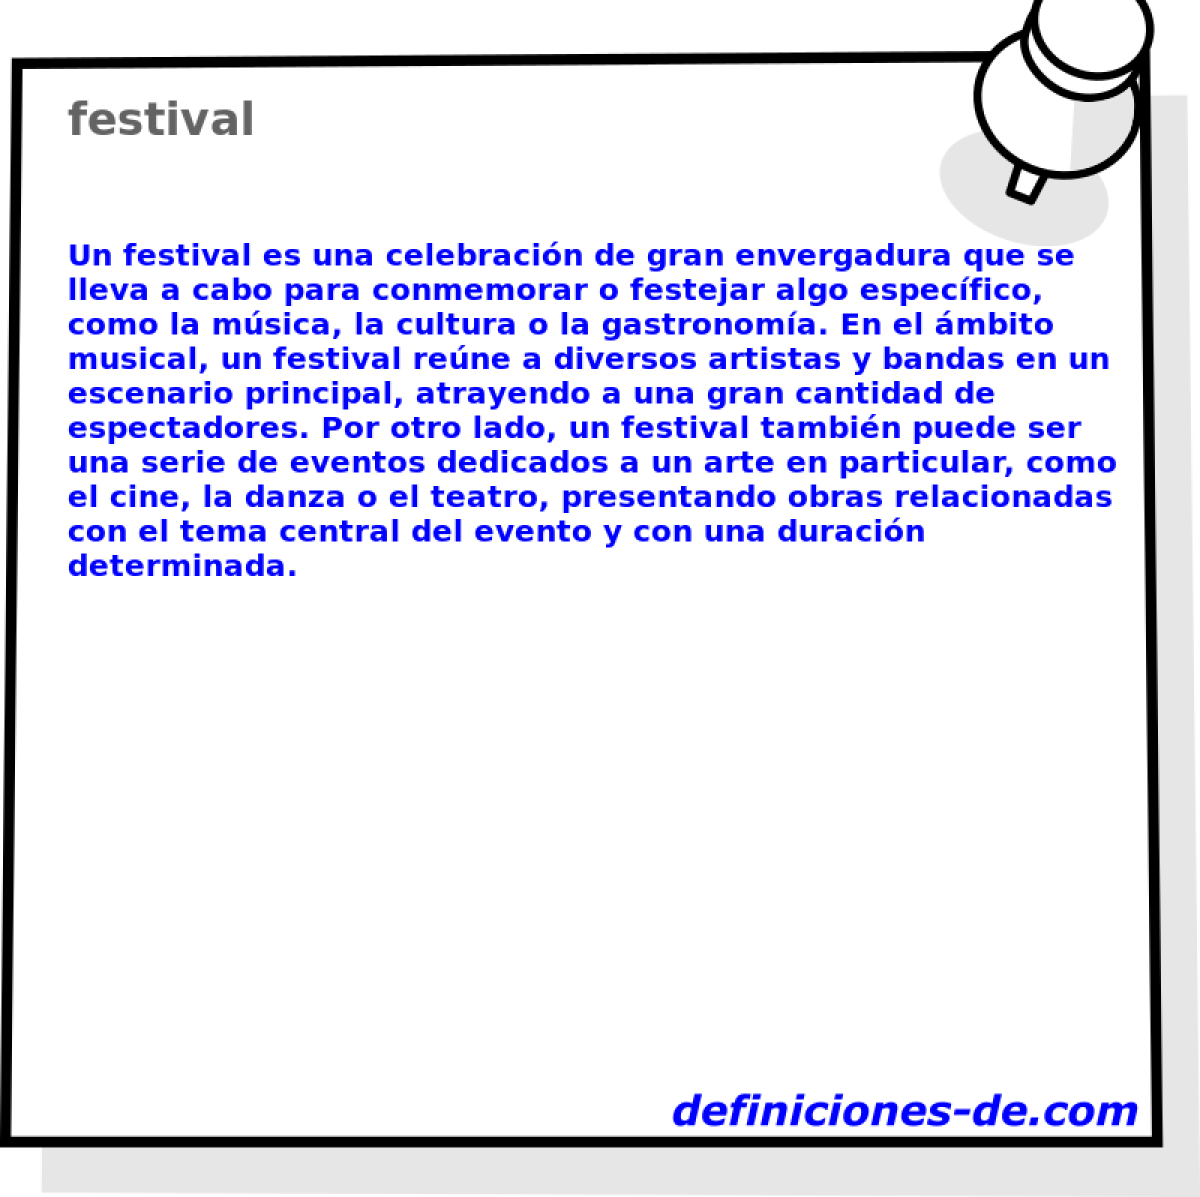 festival 